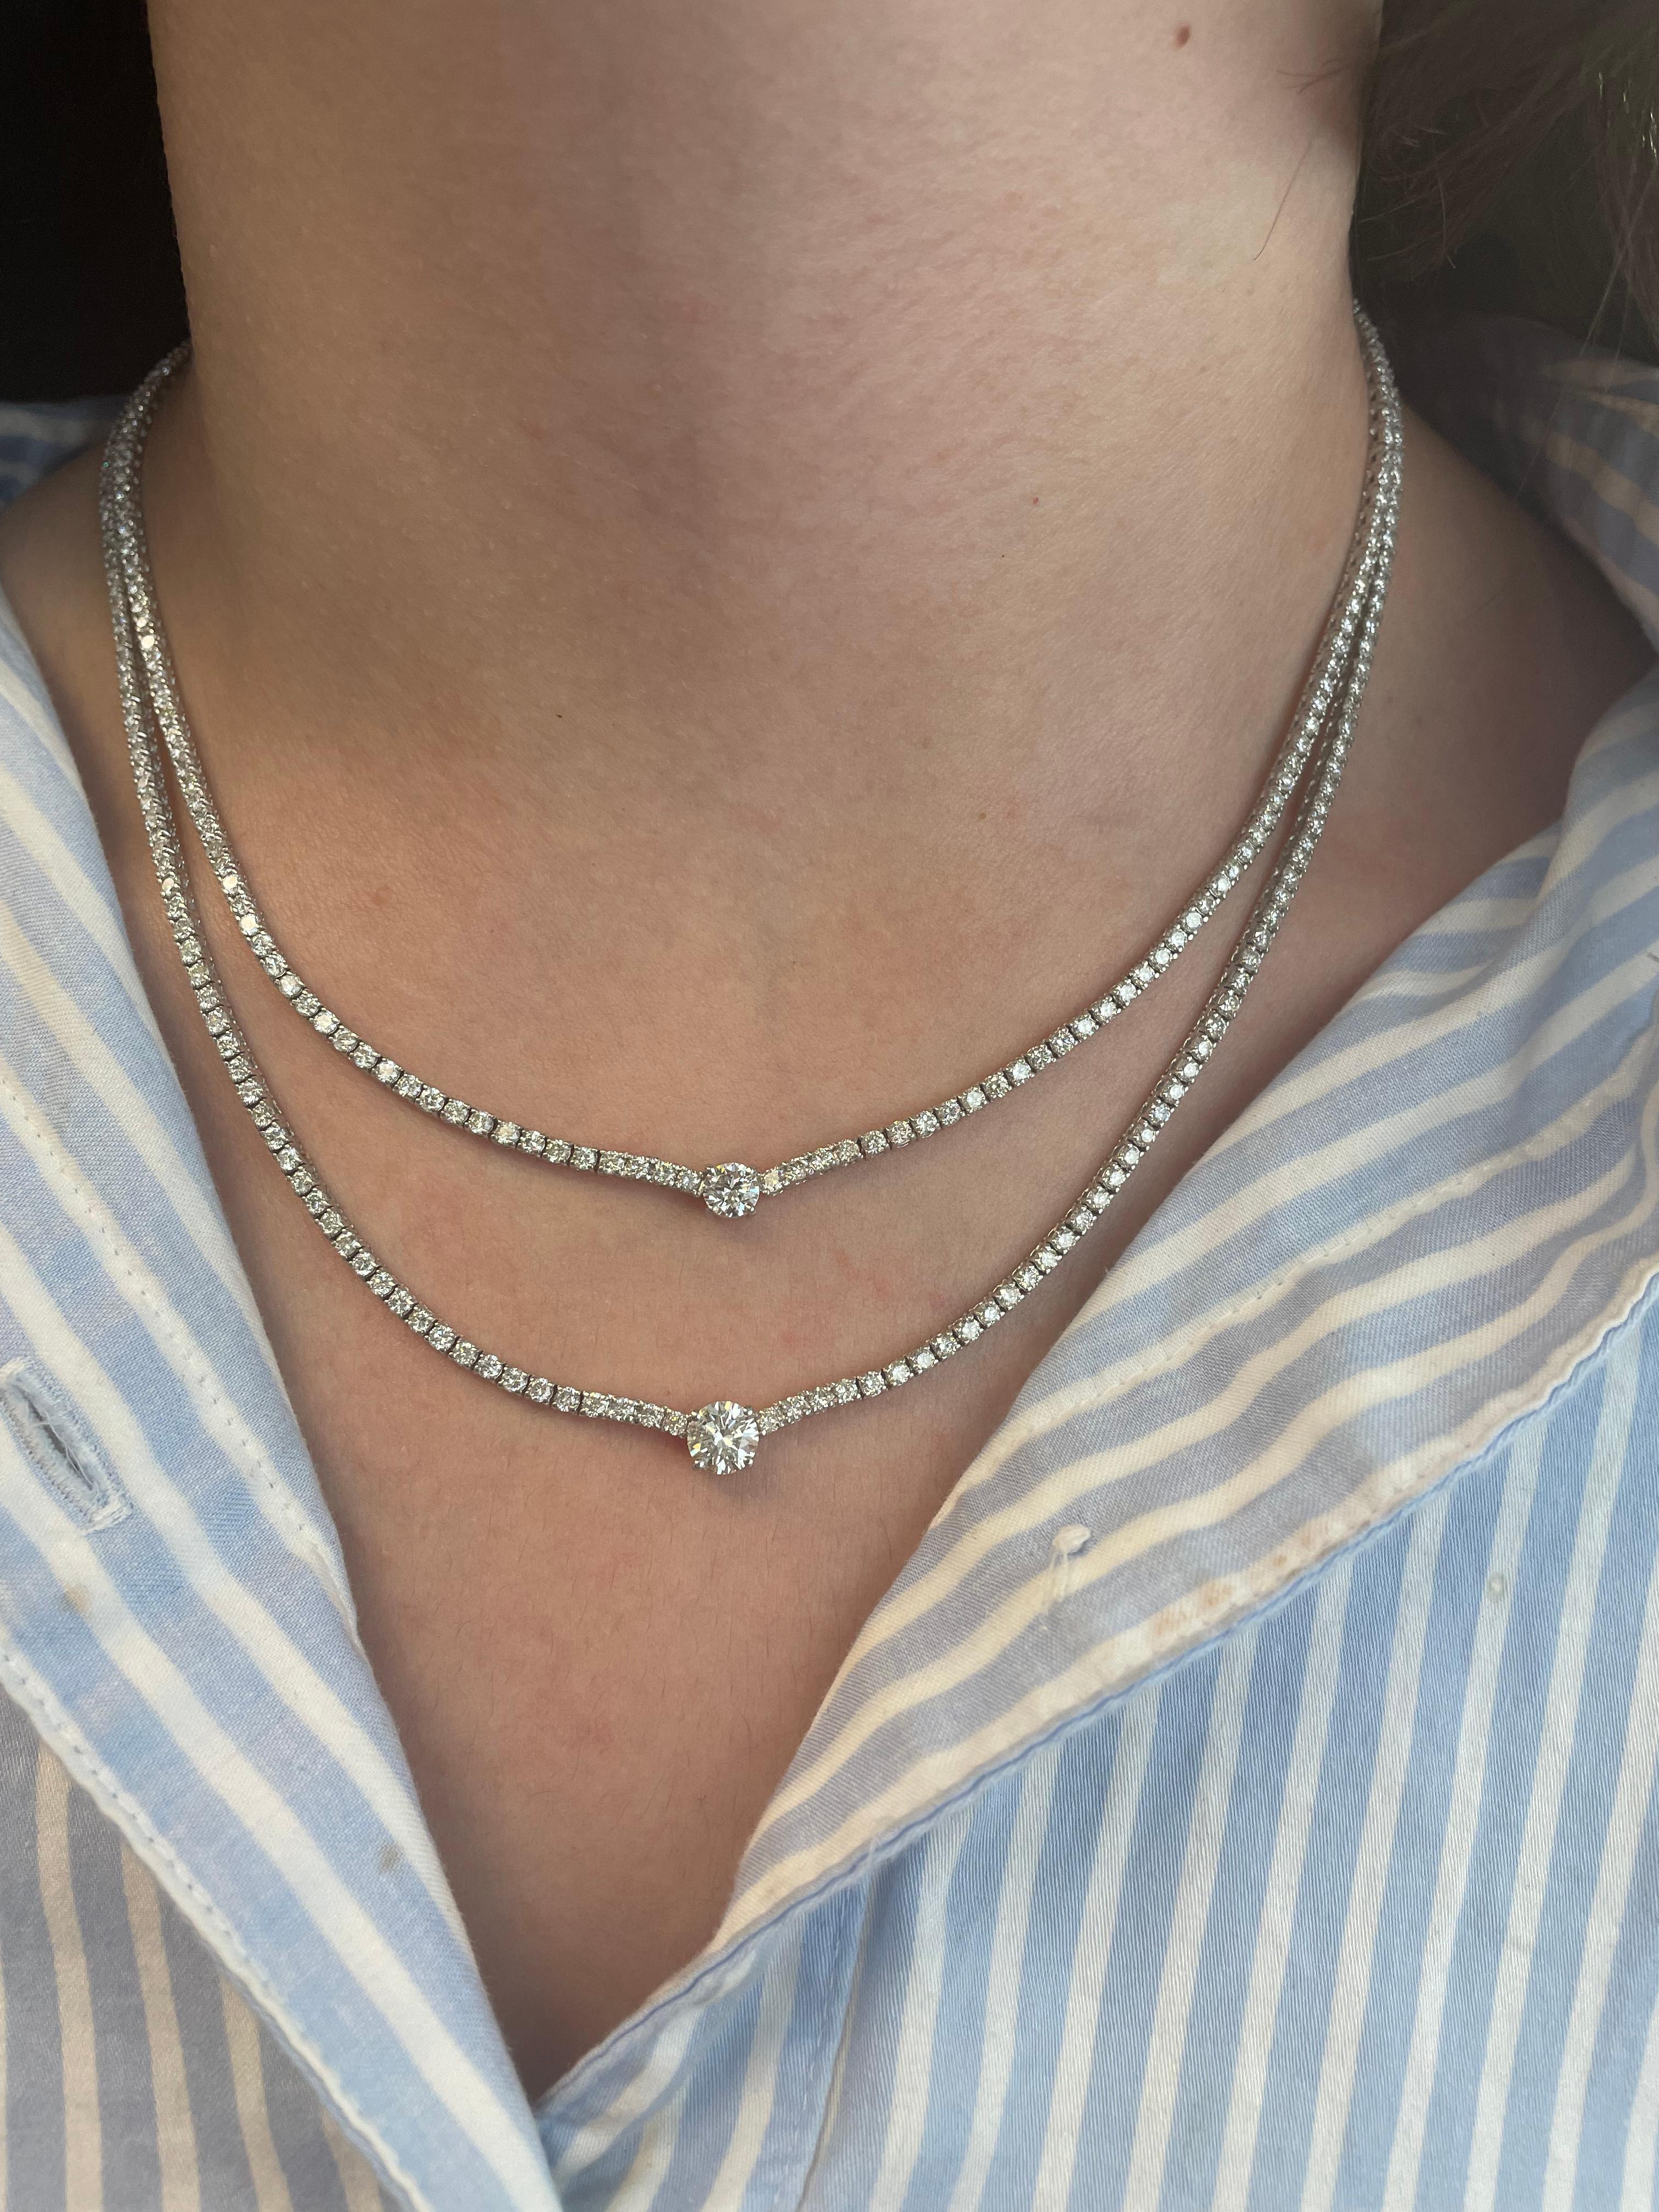 Exquisite doppelte Diamant-Tennis-Halskette mit zentralem Diamanten. Hochwertiger Schmuck von Alexander Beverly Hills.
Obere Mitte runde Brillanten 0,47ct und untere Mitte Diamant 0,84ct. Beide ungefähr G/H Farbe und VS Reinheit. Ergänzt durch 12,17